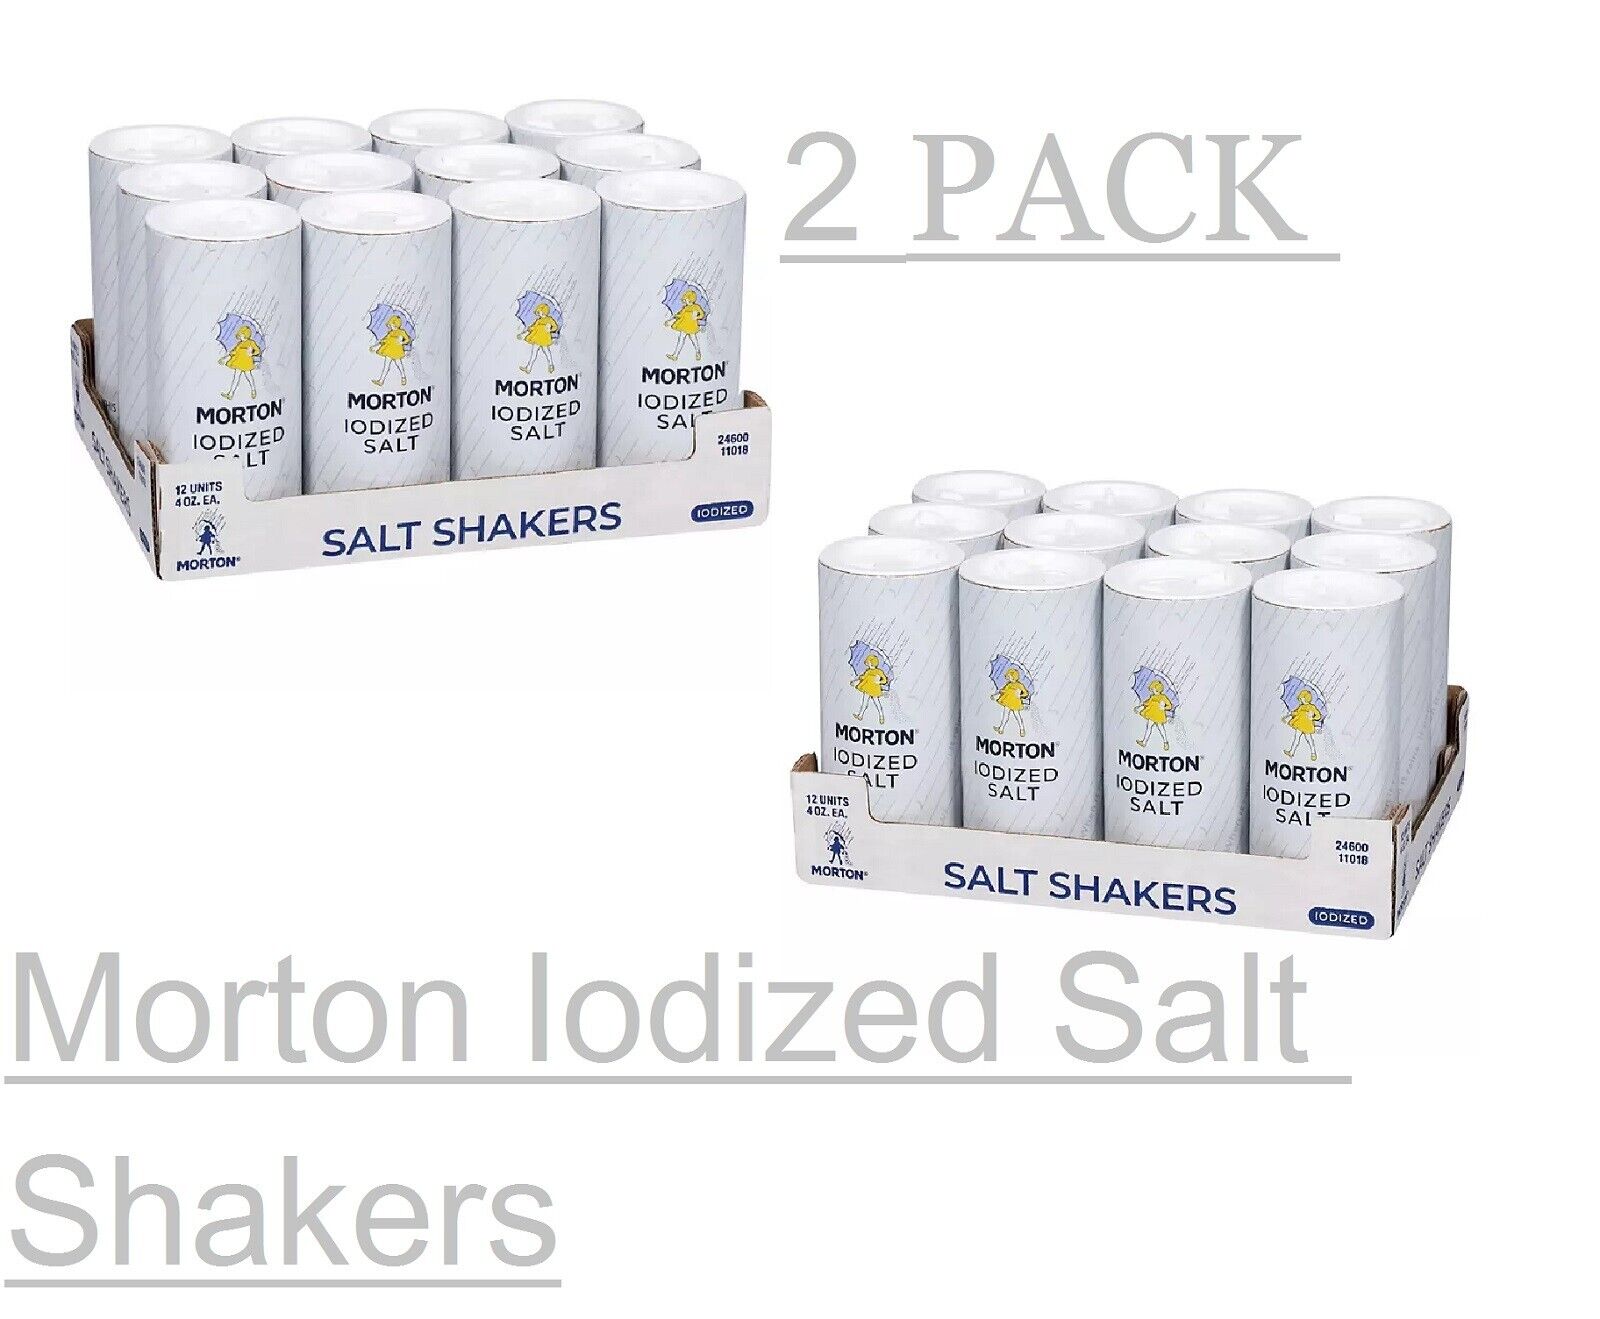 2 PACK Morton Iodized Salt Shakers (12 pk.)